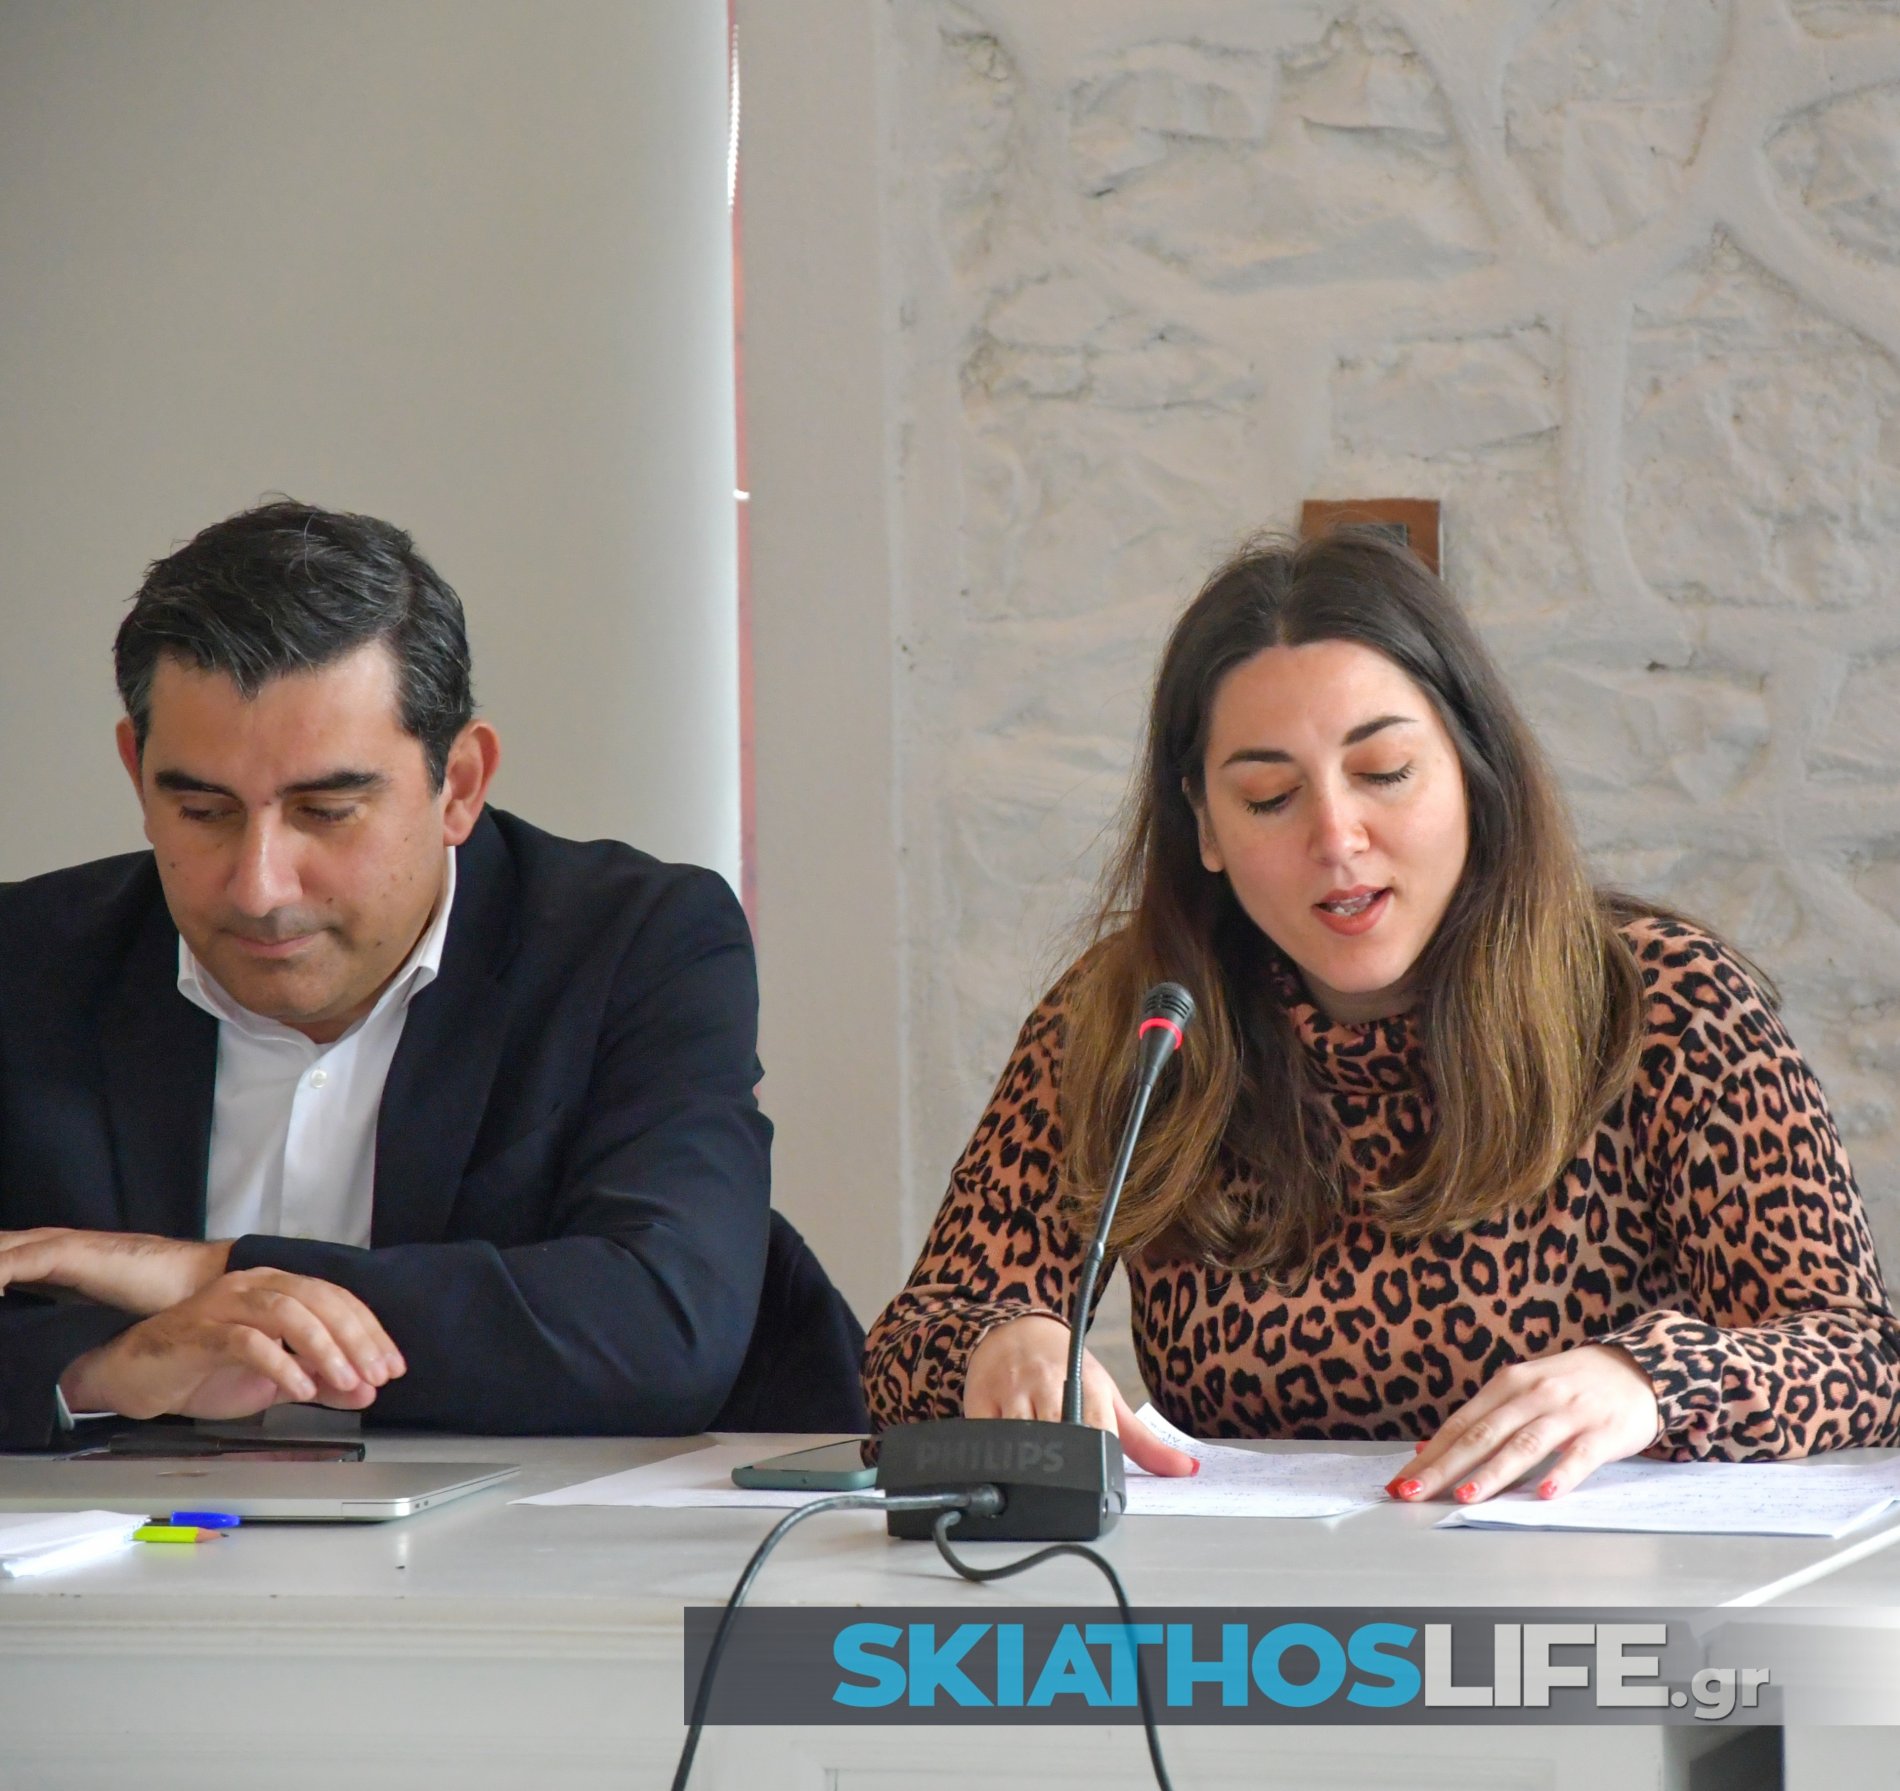 Ψηφίζεται ο προϋπολογισμός, συζητείται η Διοικητική αποβολή του Elivi από περιοχές κυριότητας στο Δήμο Σκιάθου